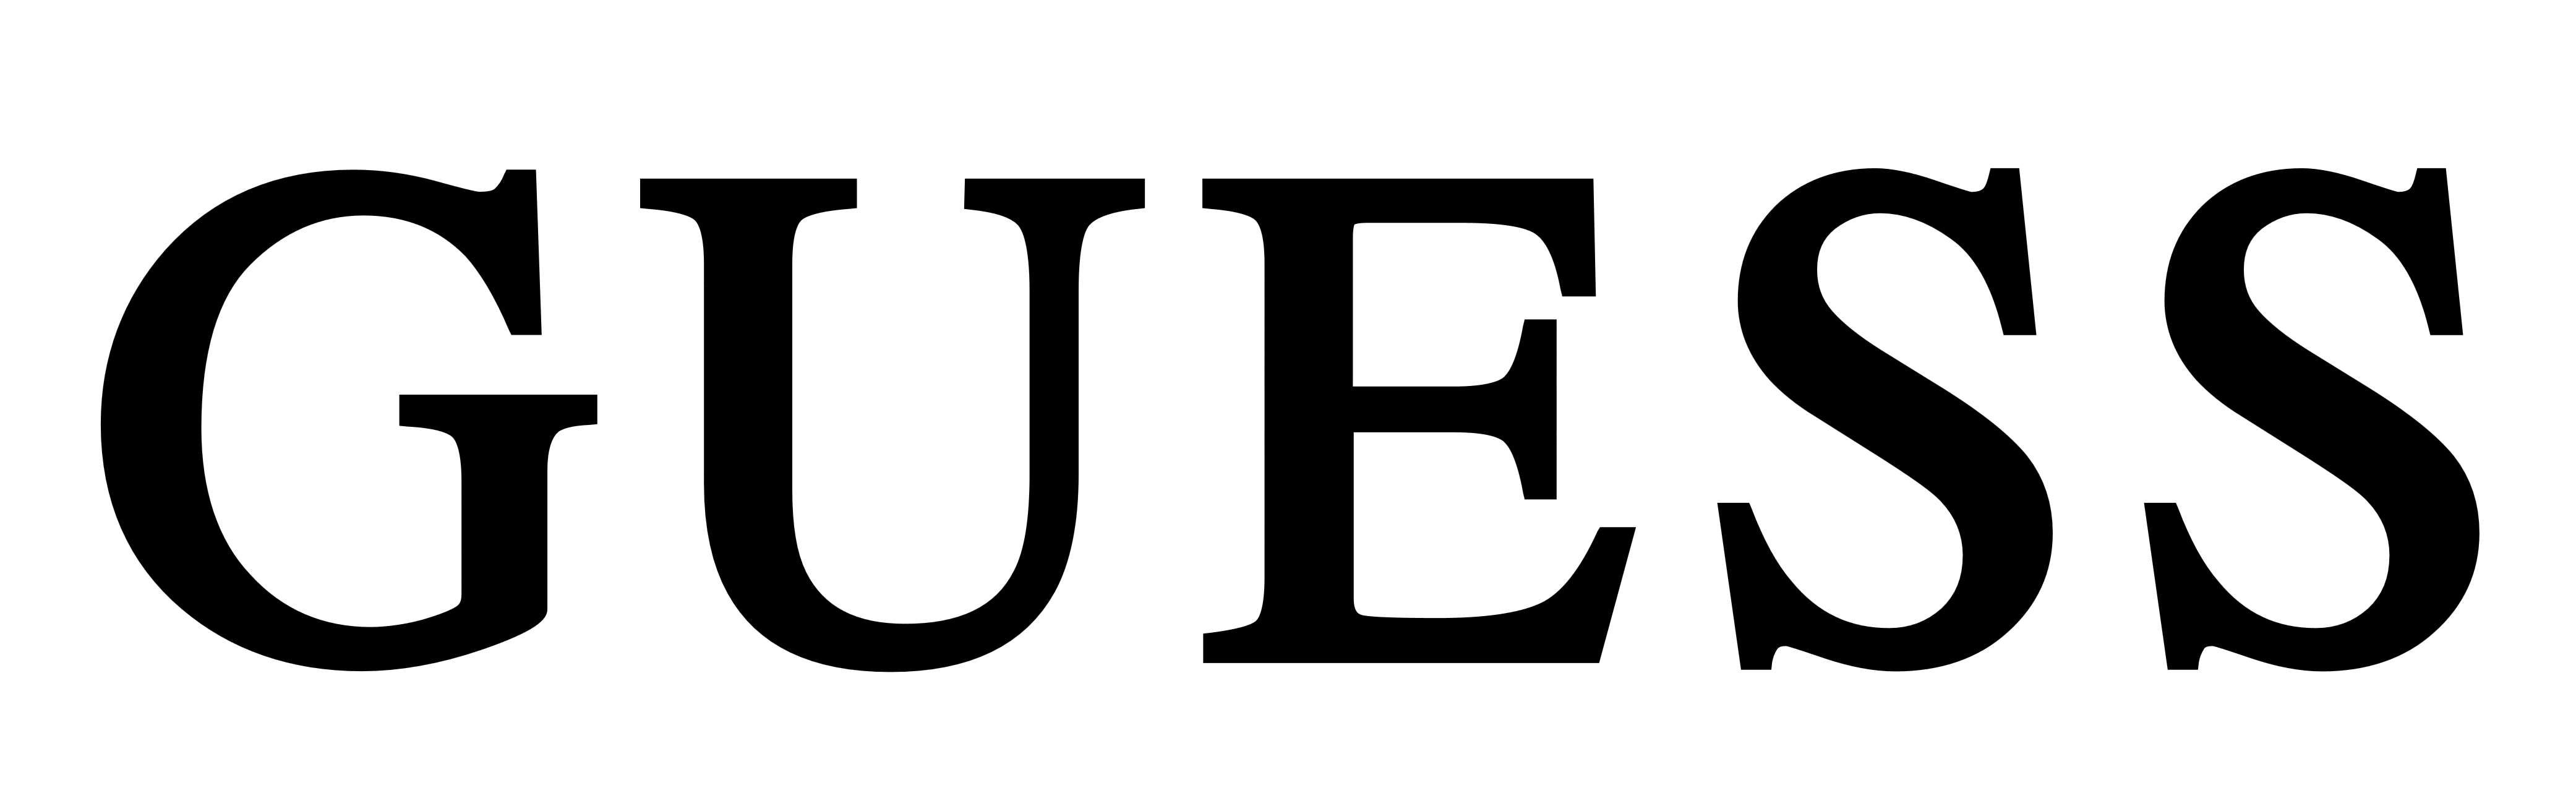 Guess logo, logotype